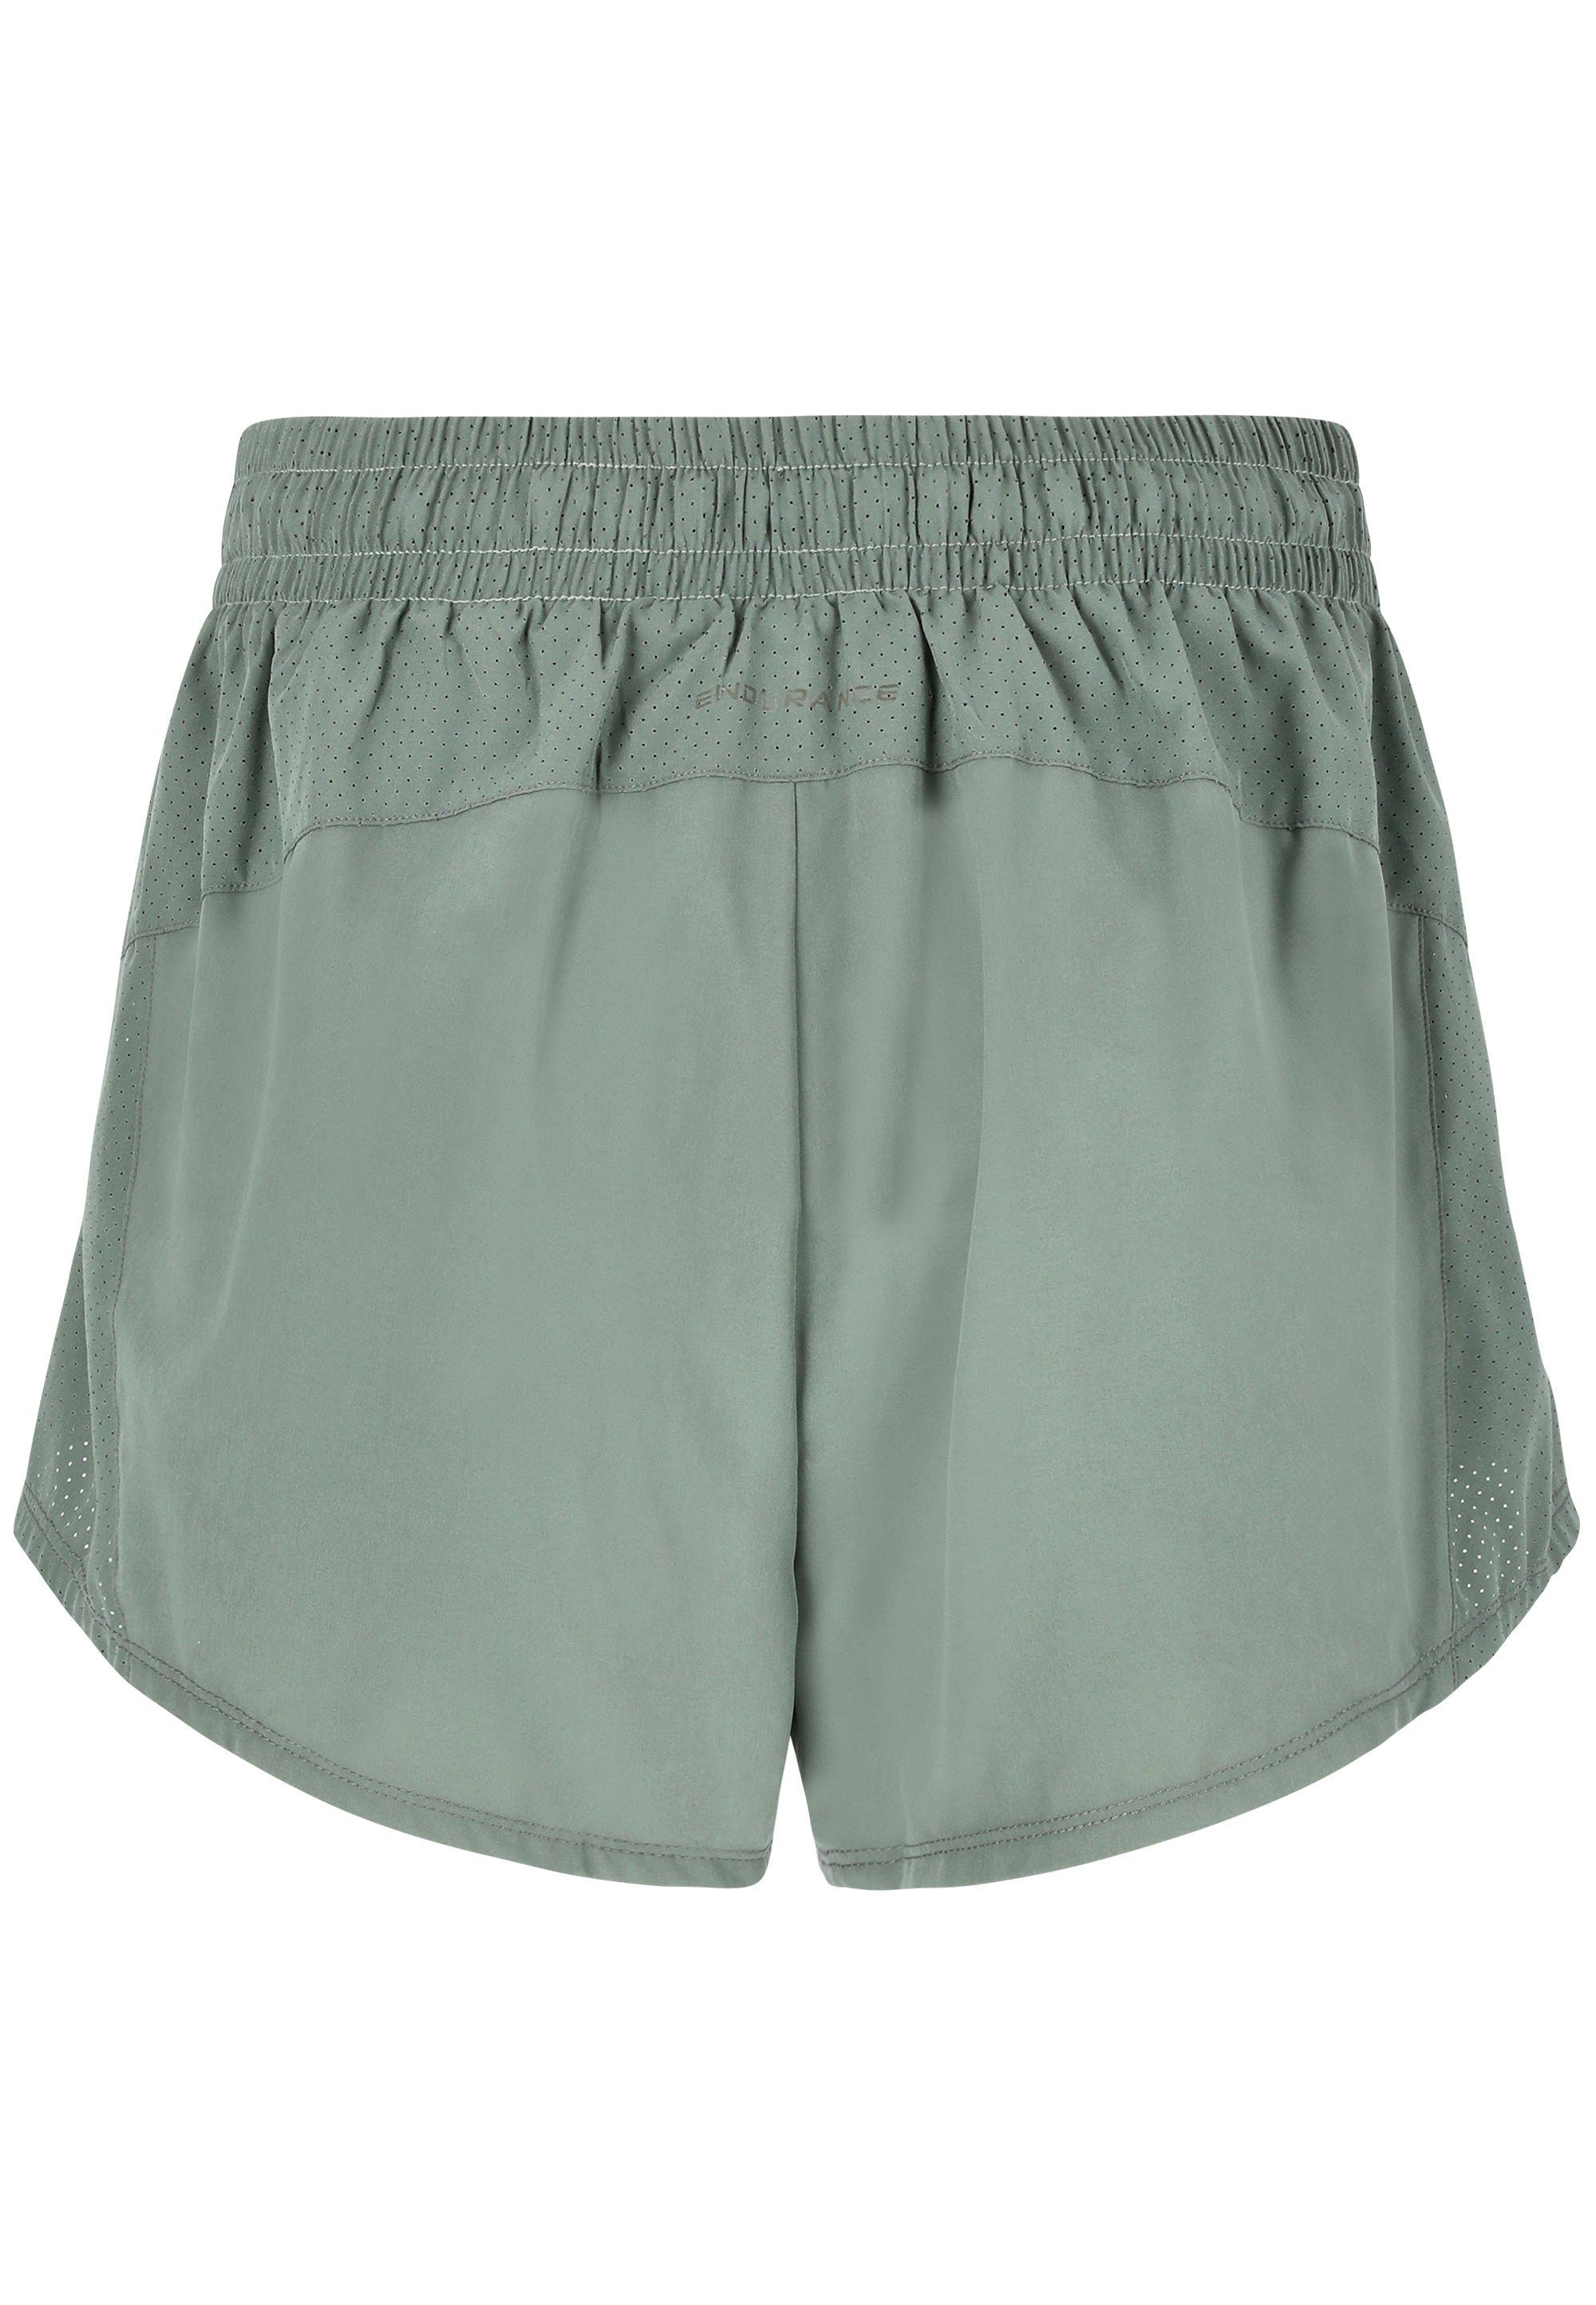 ENDURANCE praktischen Eslaire Taschen dunkelgrün Shorts mit